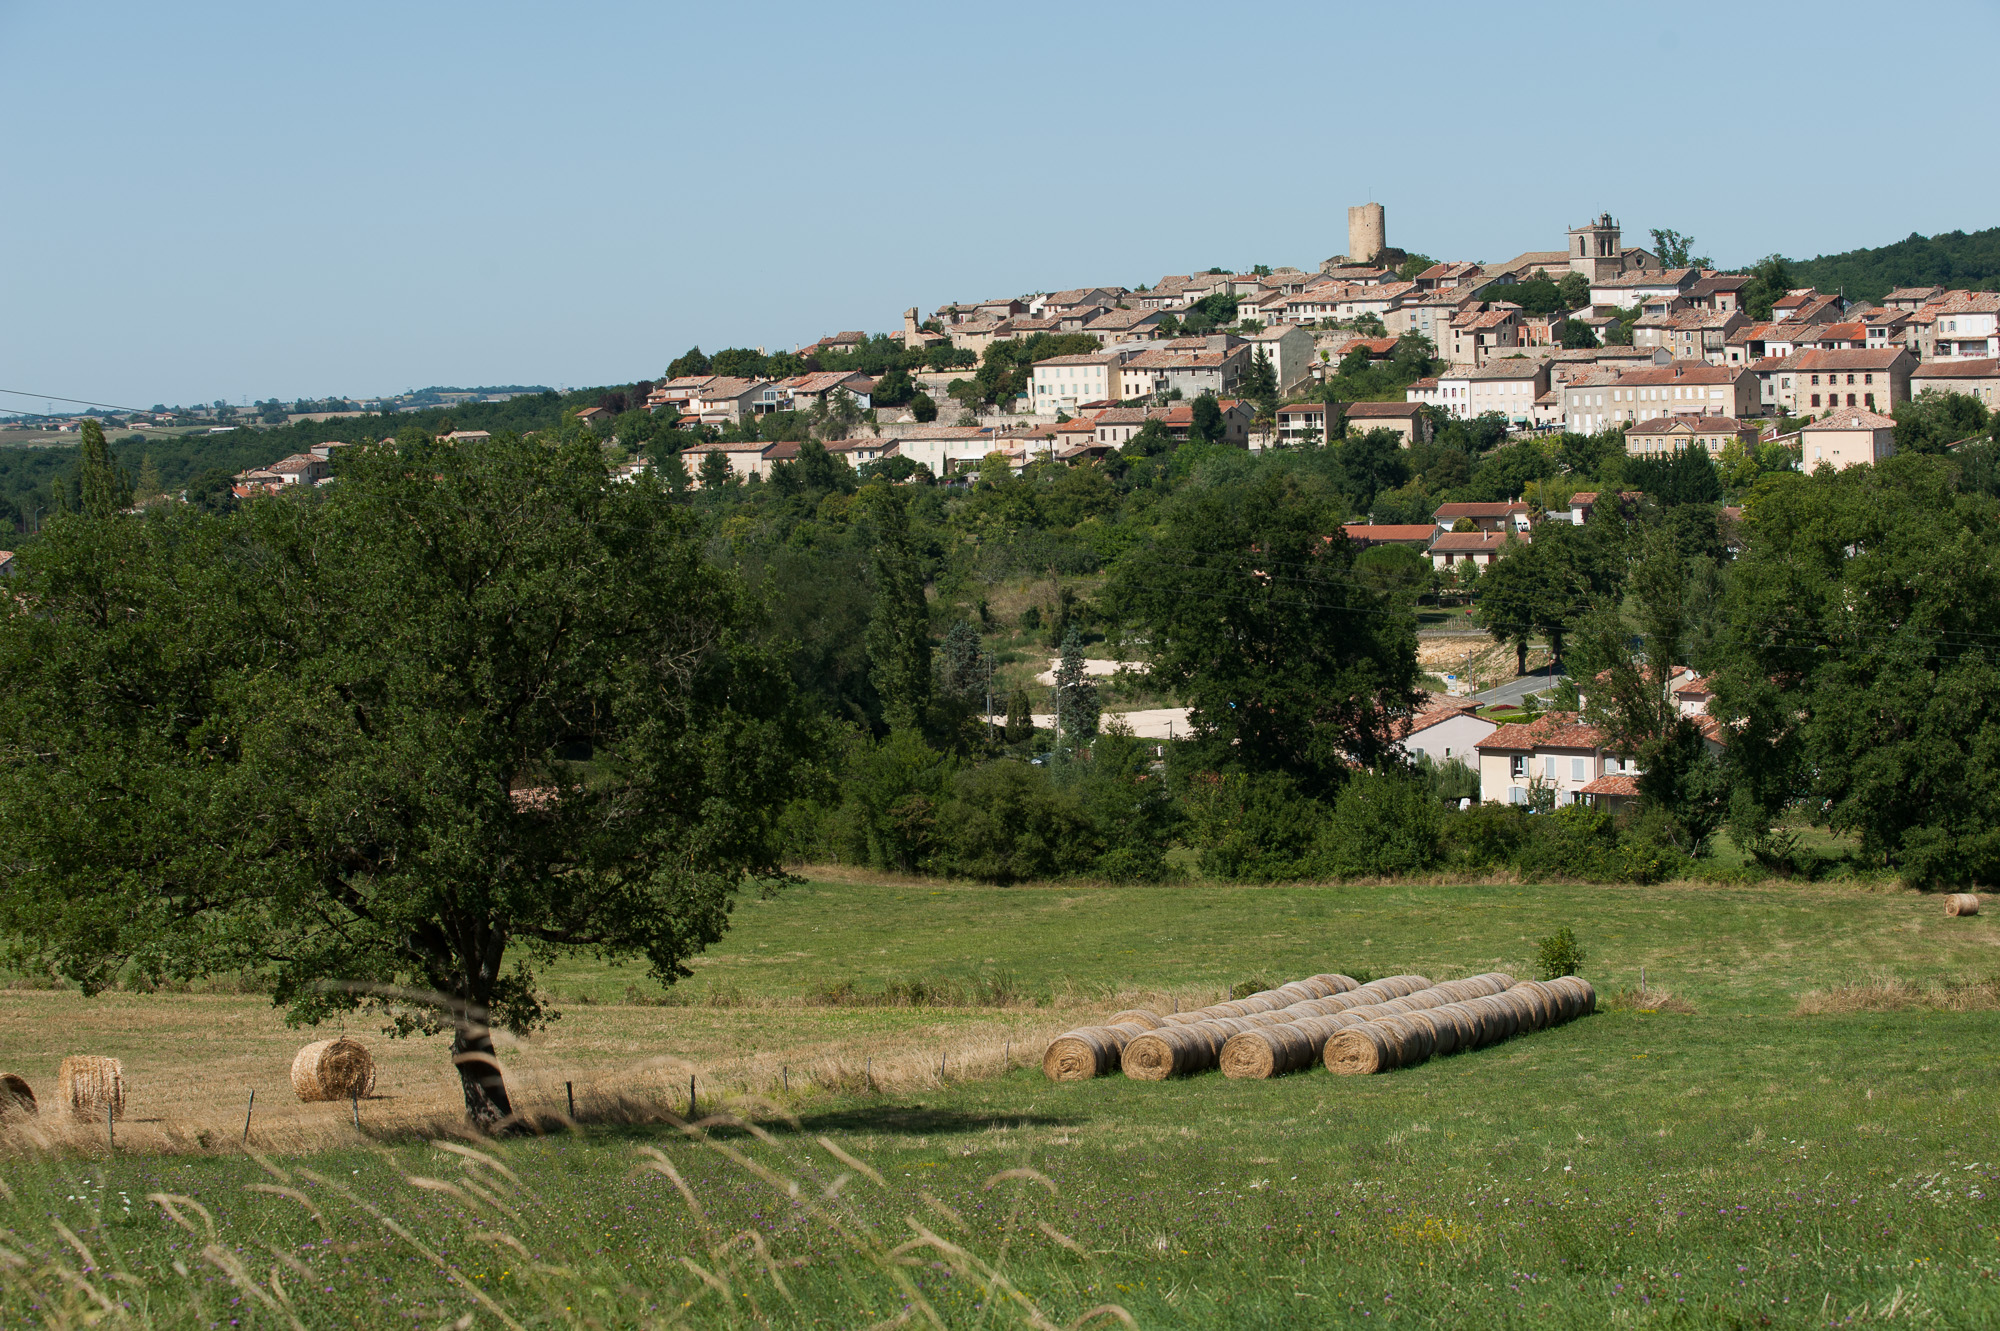 Vues du village depuis la campagne environnante.